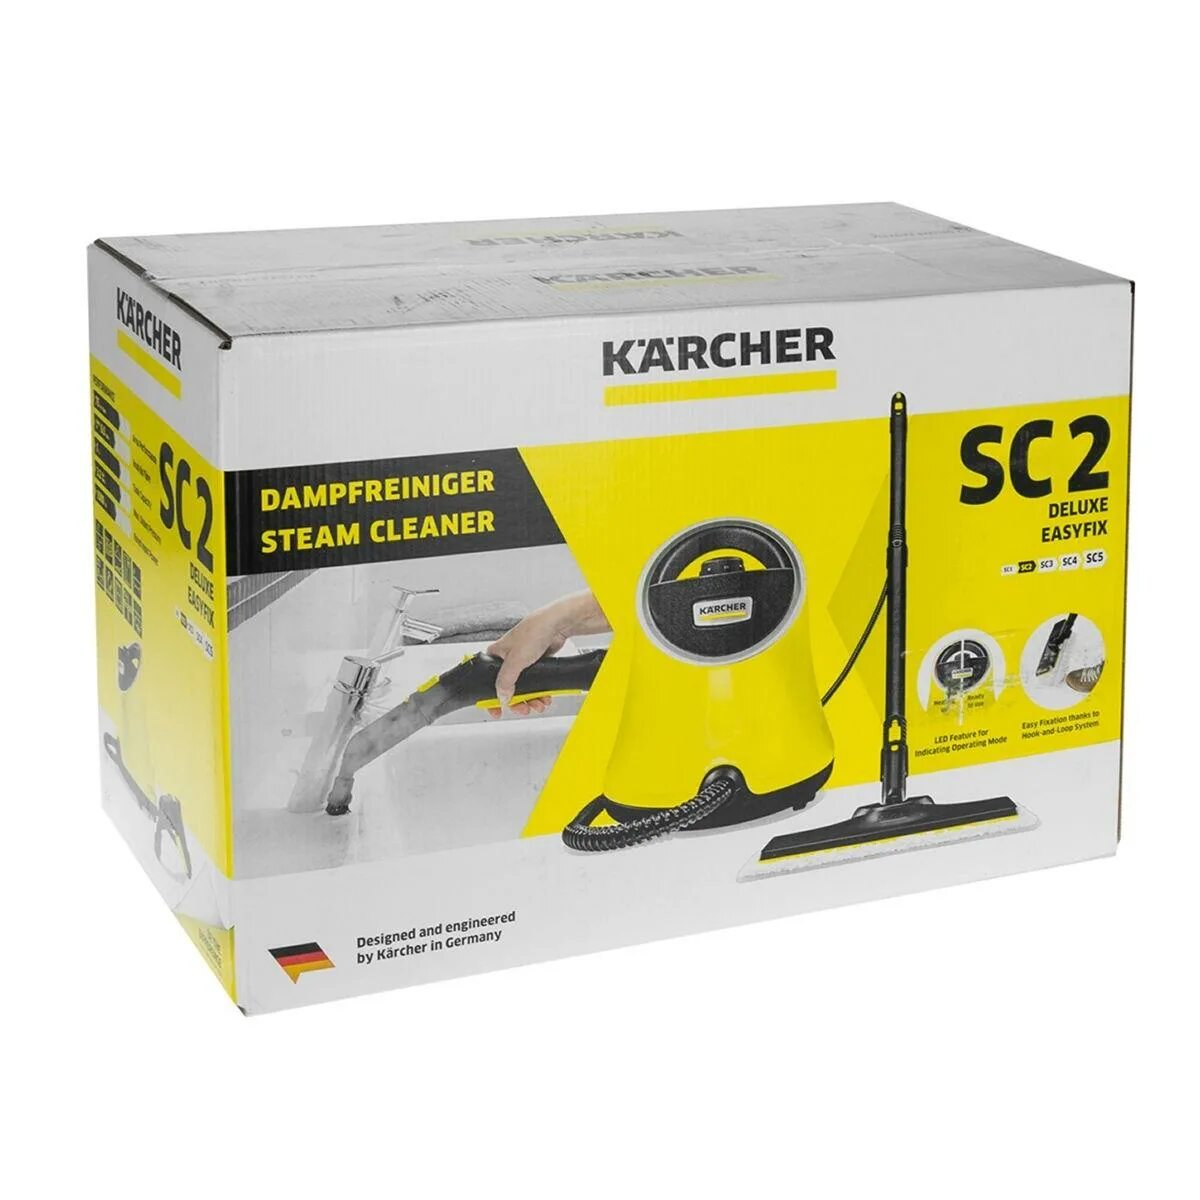 Паровой очиститель Karcher SC 2 Deluxe EASYFIX. Пароочиститель Karcher SC 3 EASYFIX. Пароочиститель Karcher SC 2 EASYFIX, желтый. Кёрхер пароочиститель SC 2 Делюкс. Пароочиститель керхер sc2 купить